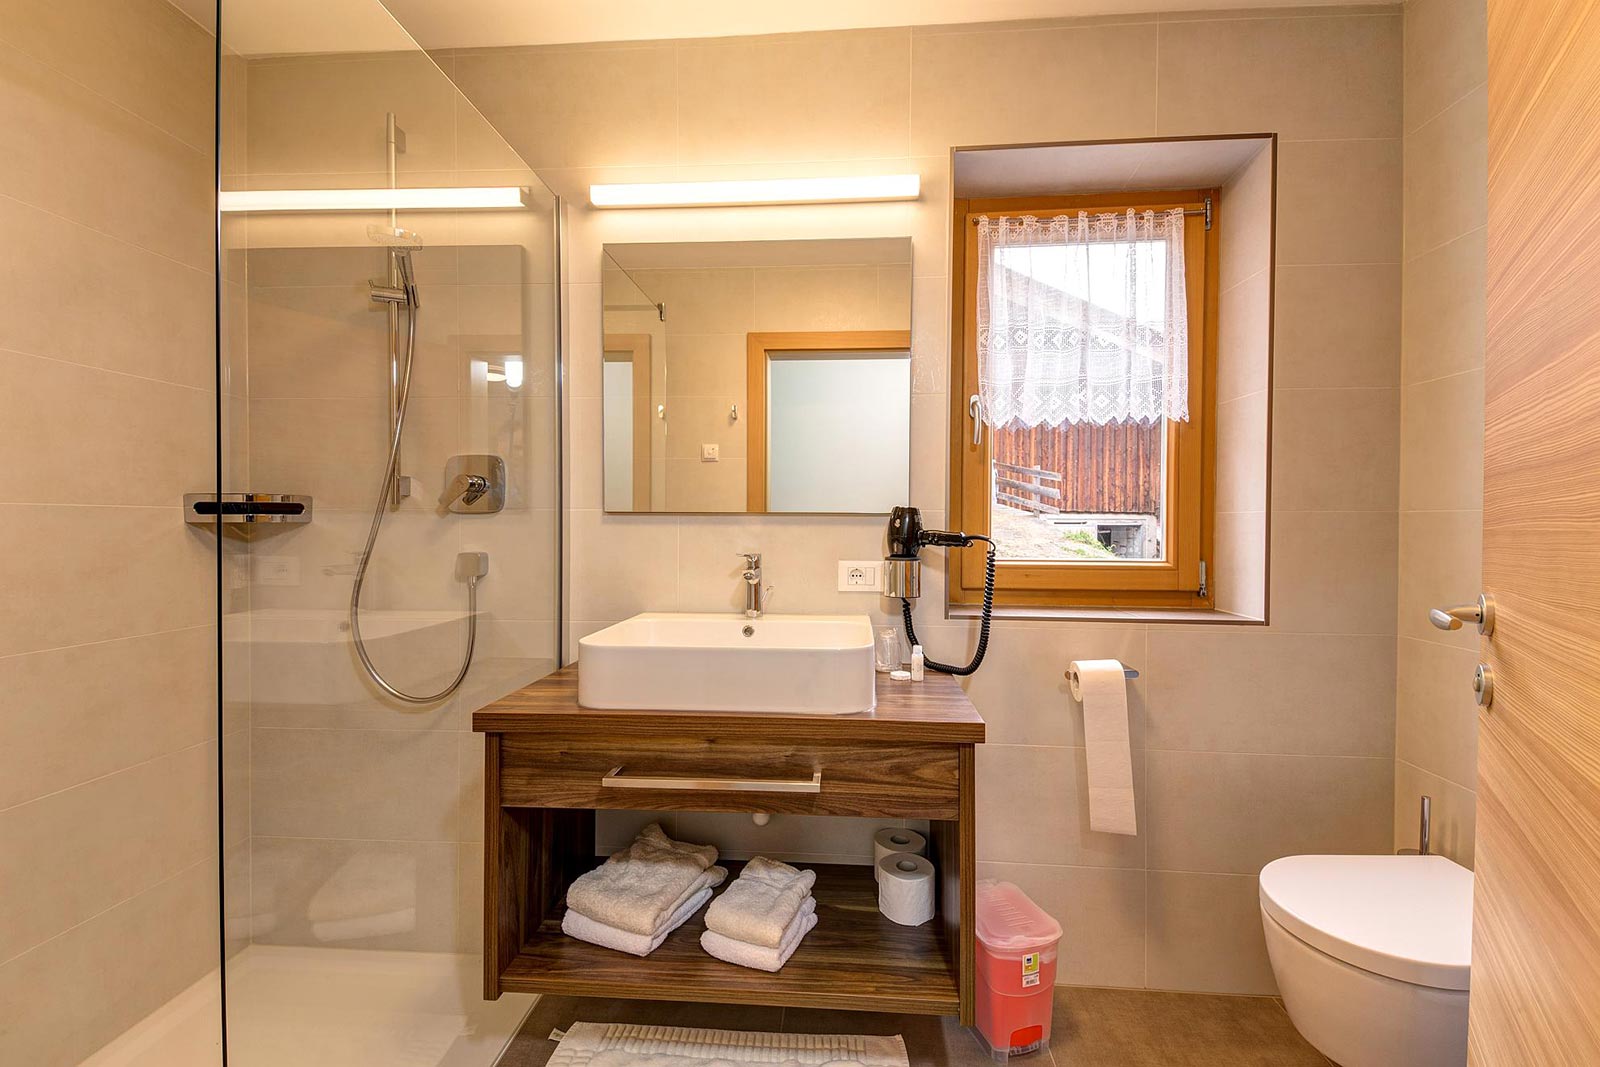 Das Badezimmer eines der Zimmer unseres Hotels im Passeiertal